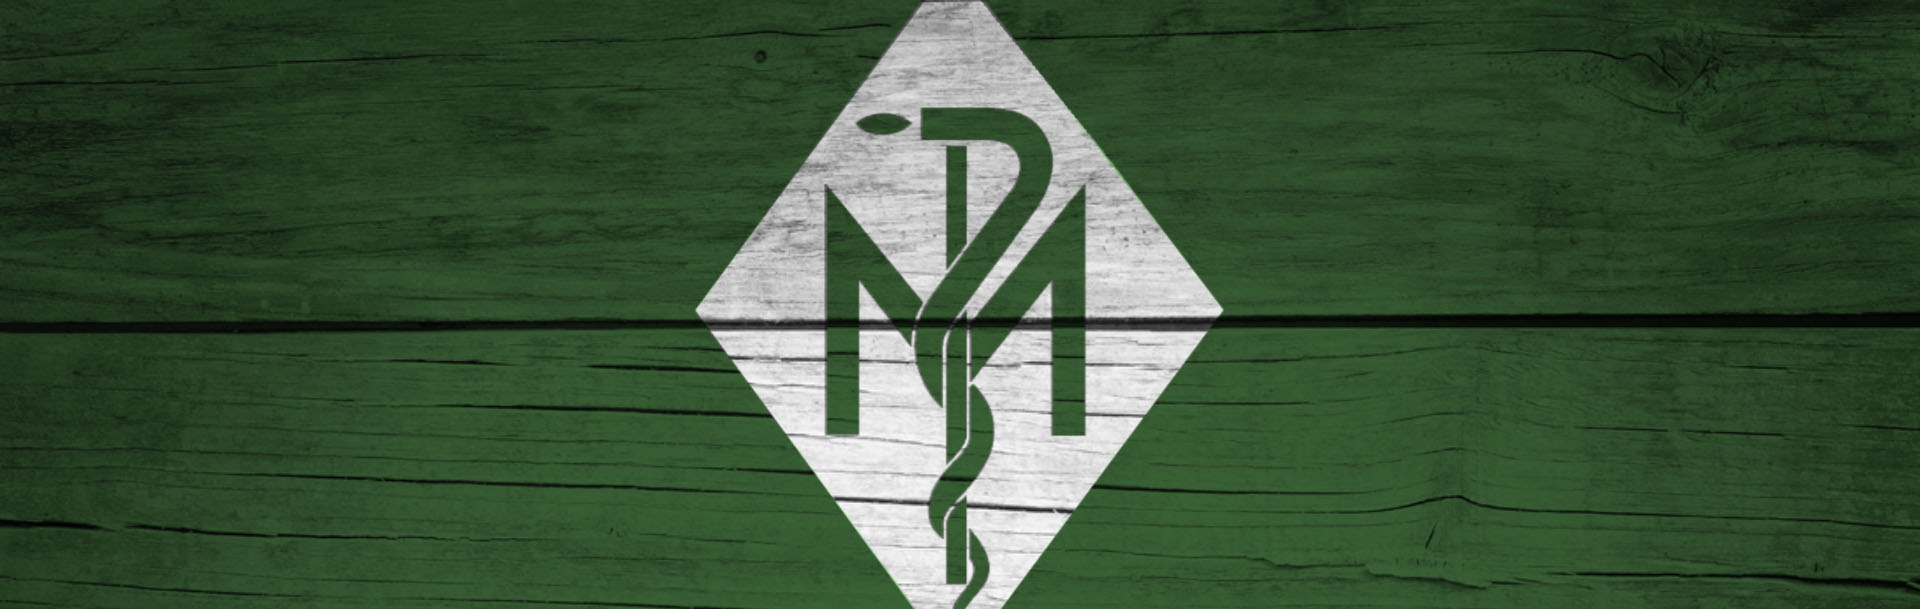 Logo von Müggenburg Pflanzliche Rohstoffe GmbH & Co. KG in weiß auf grünem Grund mit Holzstruktur